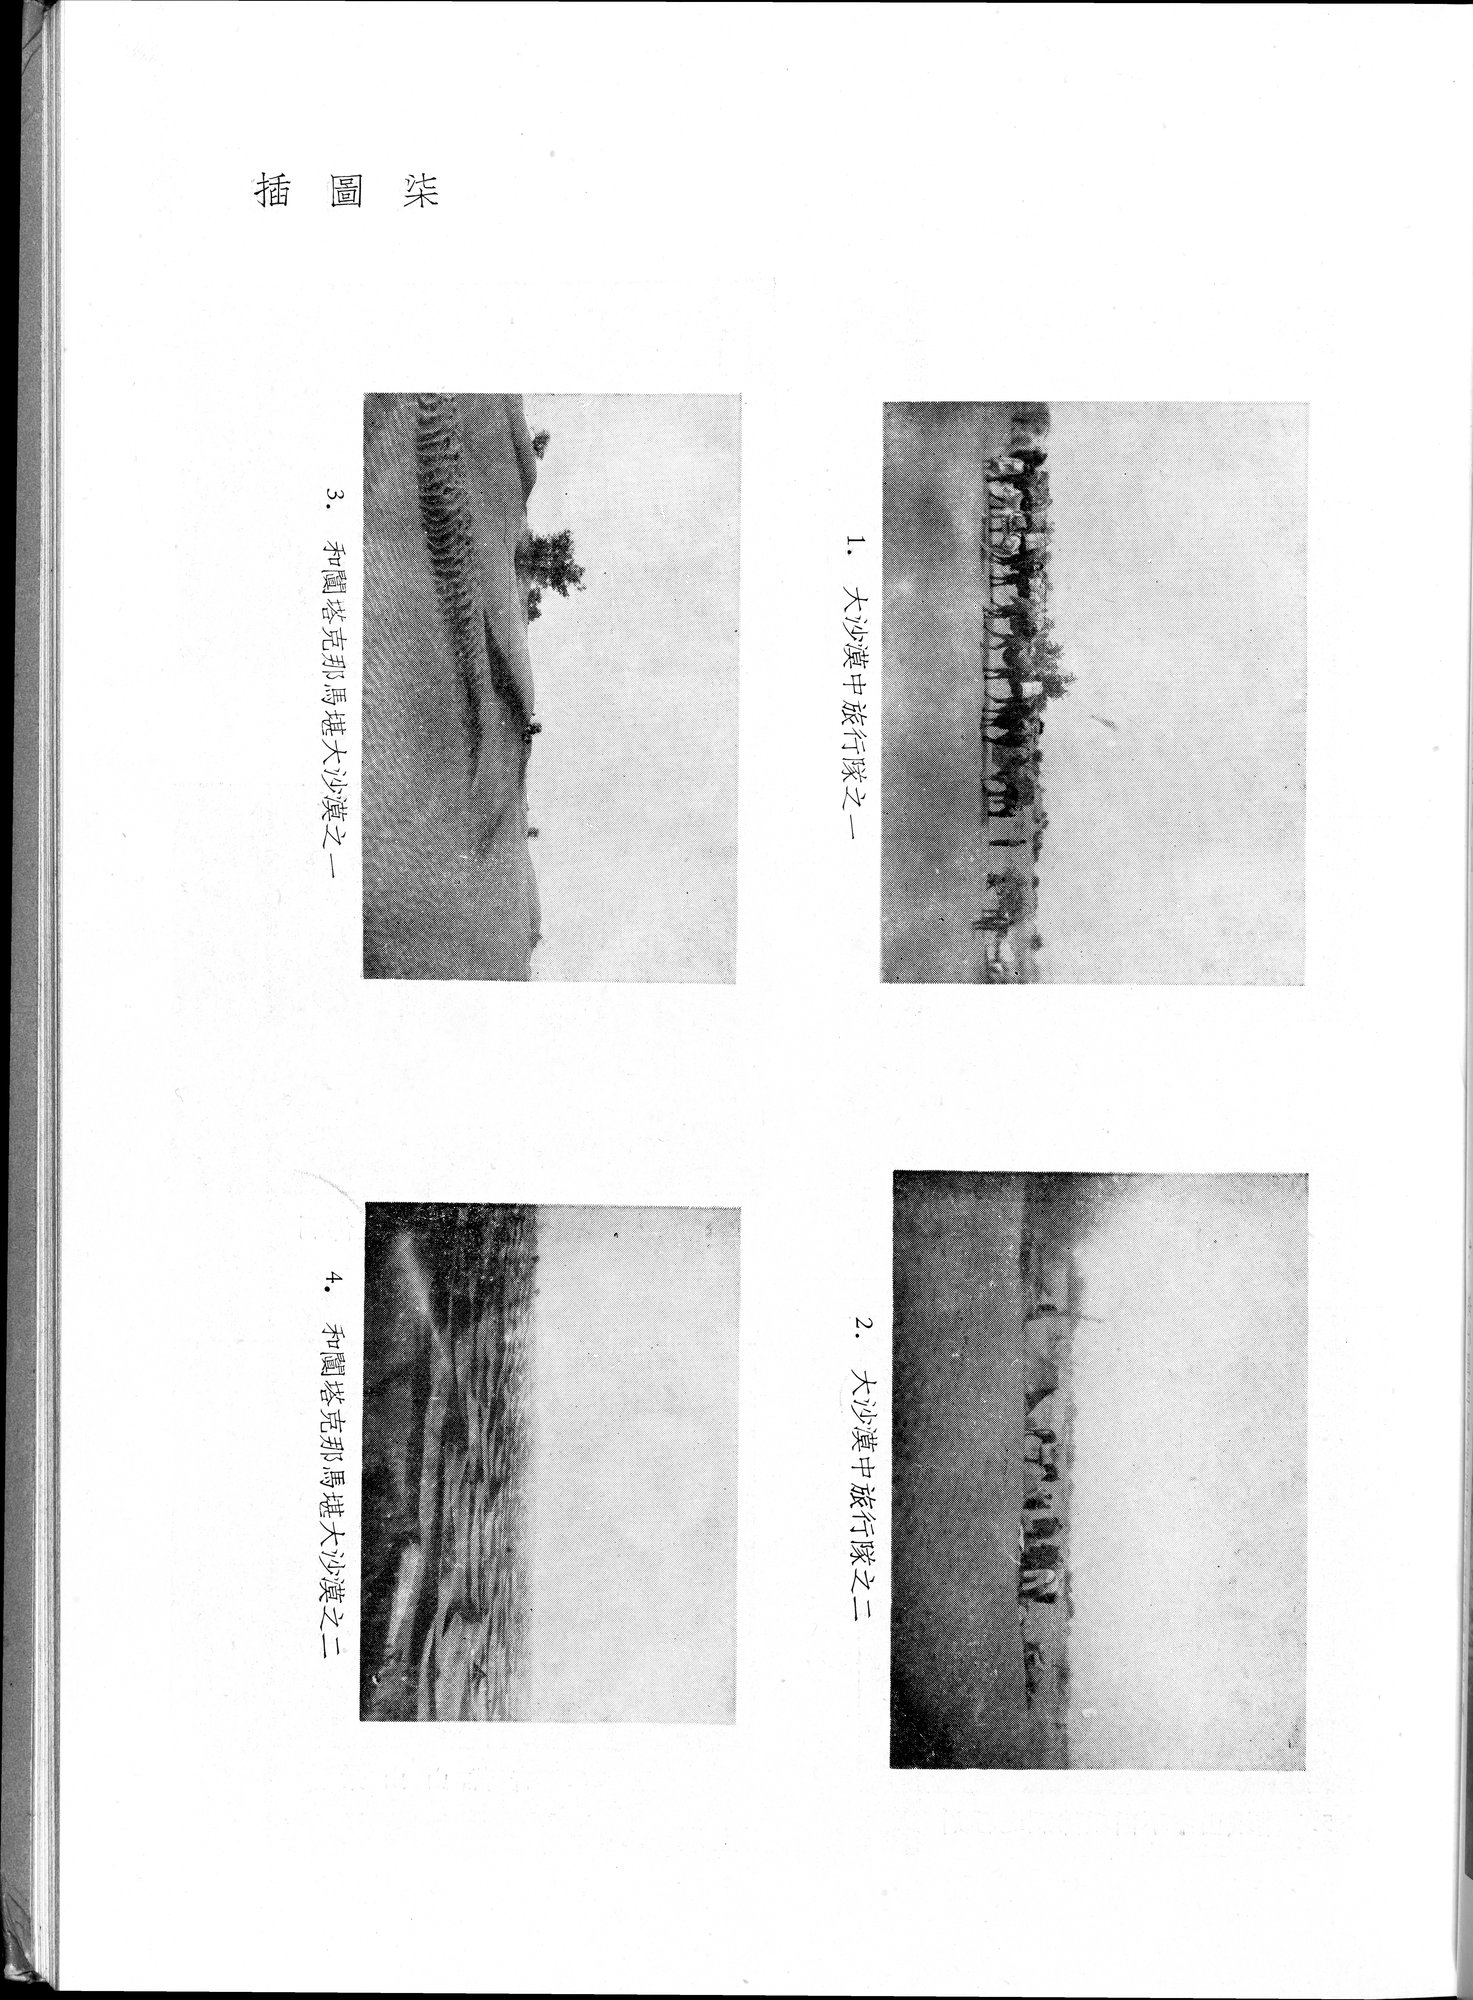 塔里木盆地考古記 : vol.1 / Page 103 (Grayscale High Resolution Image)